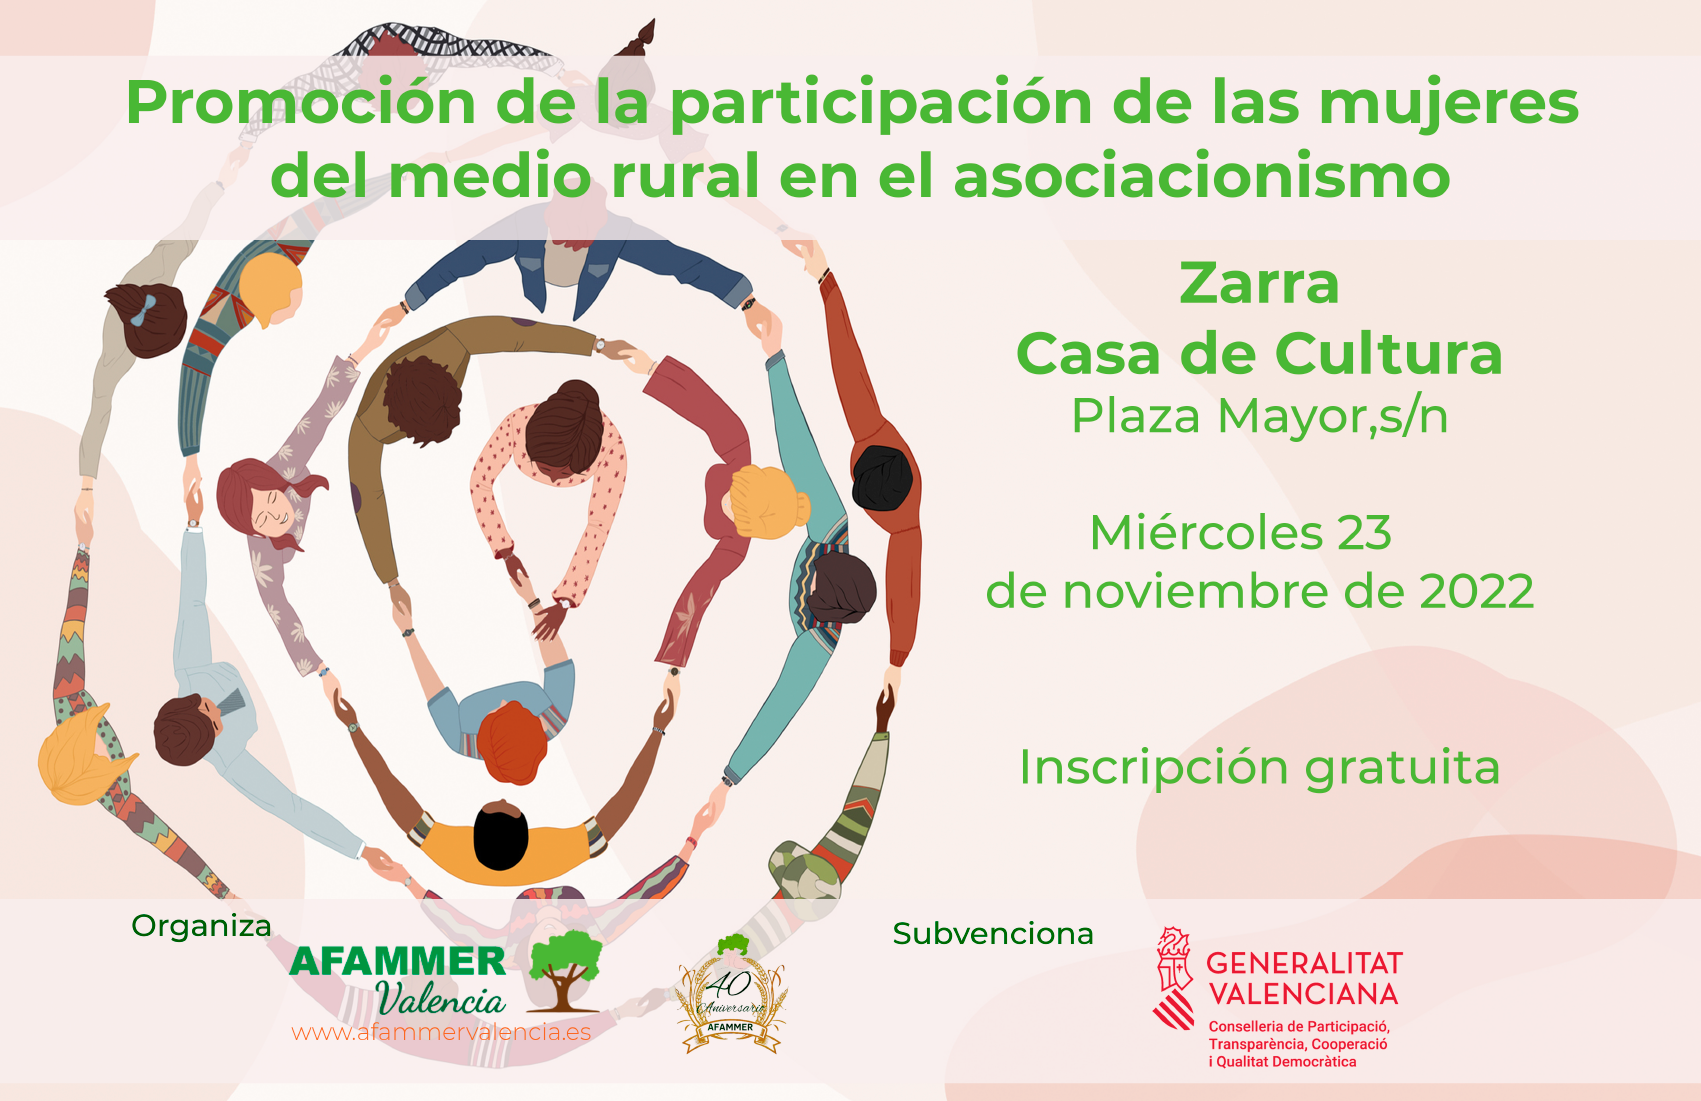 Afammer València organitza a Zarra un nou taller de Promoció de la Participació de les Dones del Medi rural en l’Associacionisme